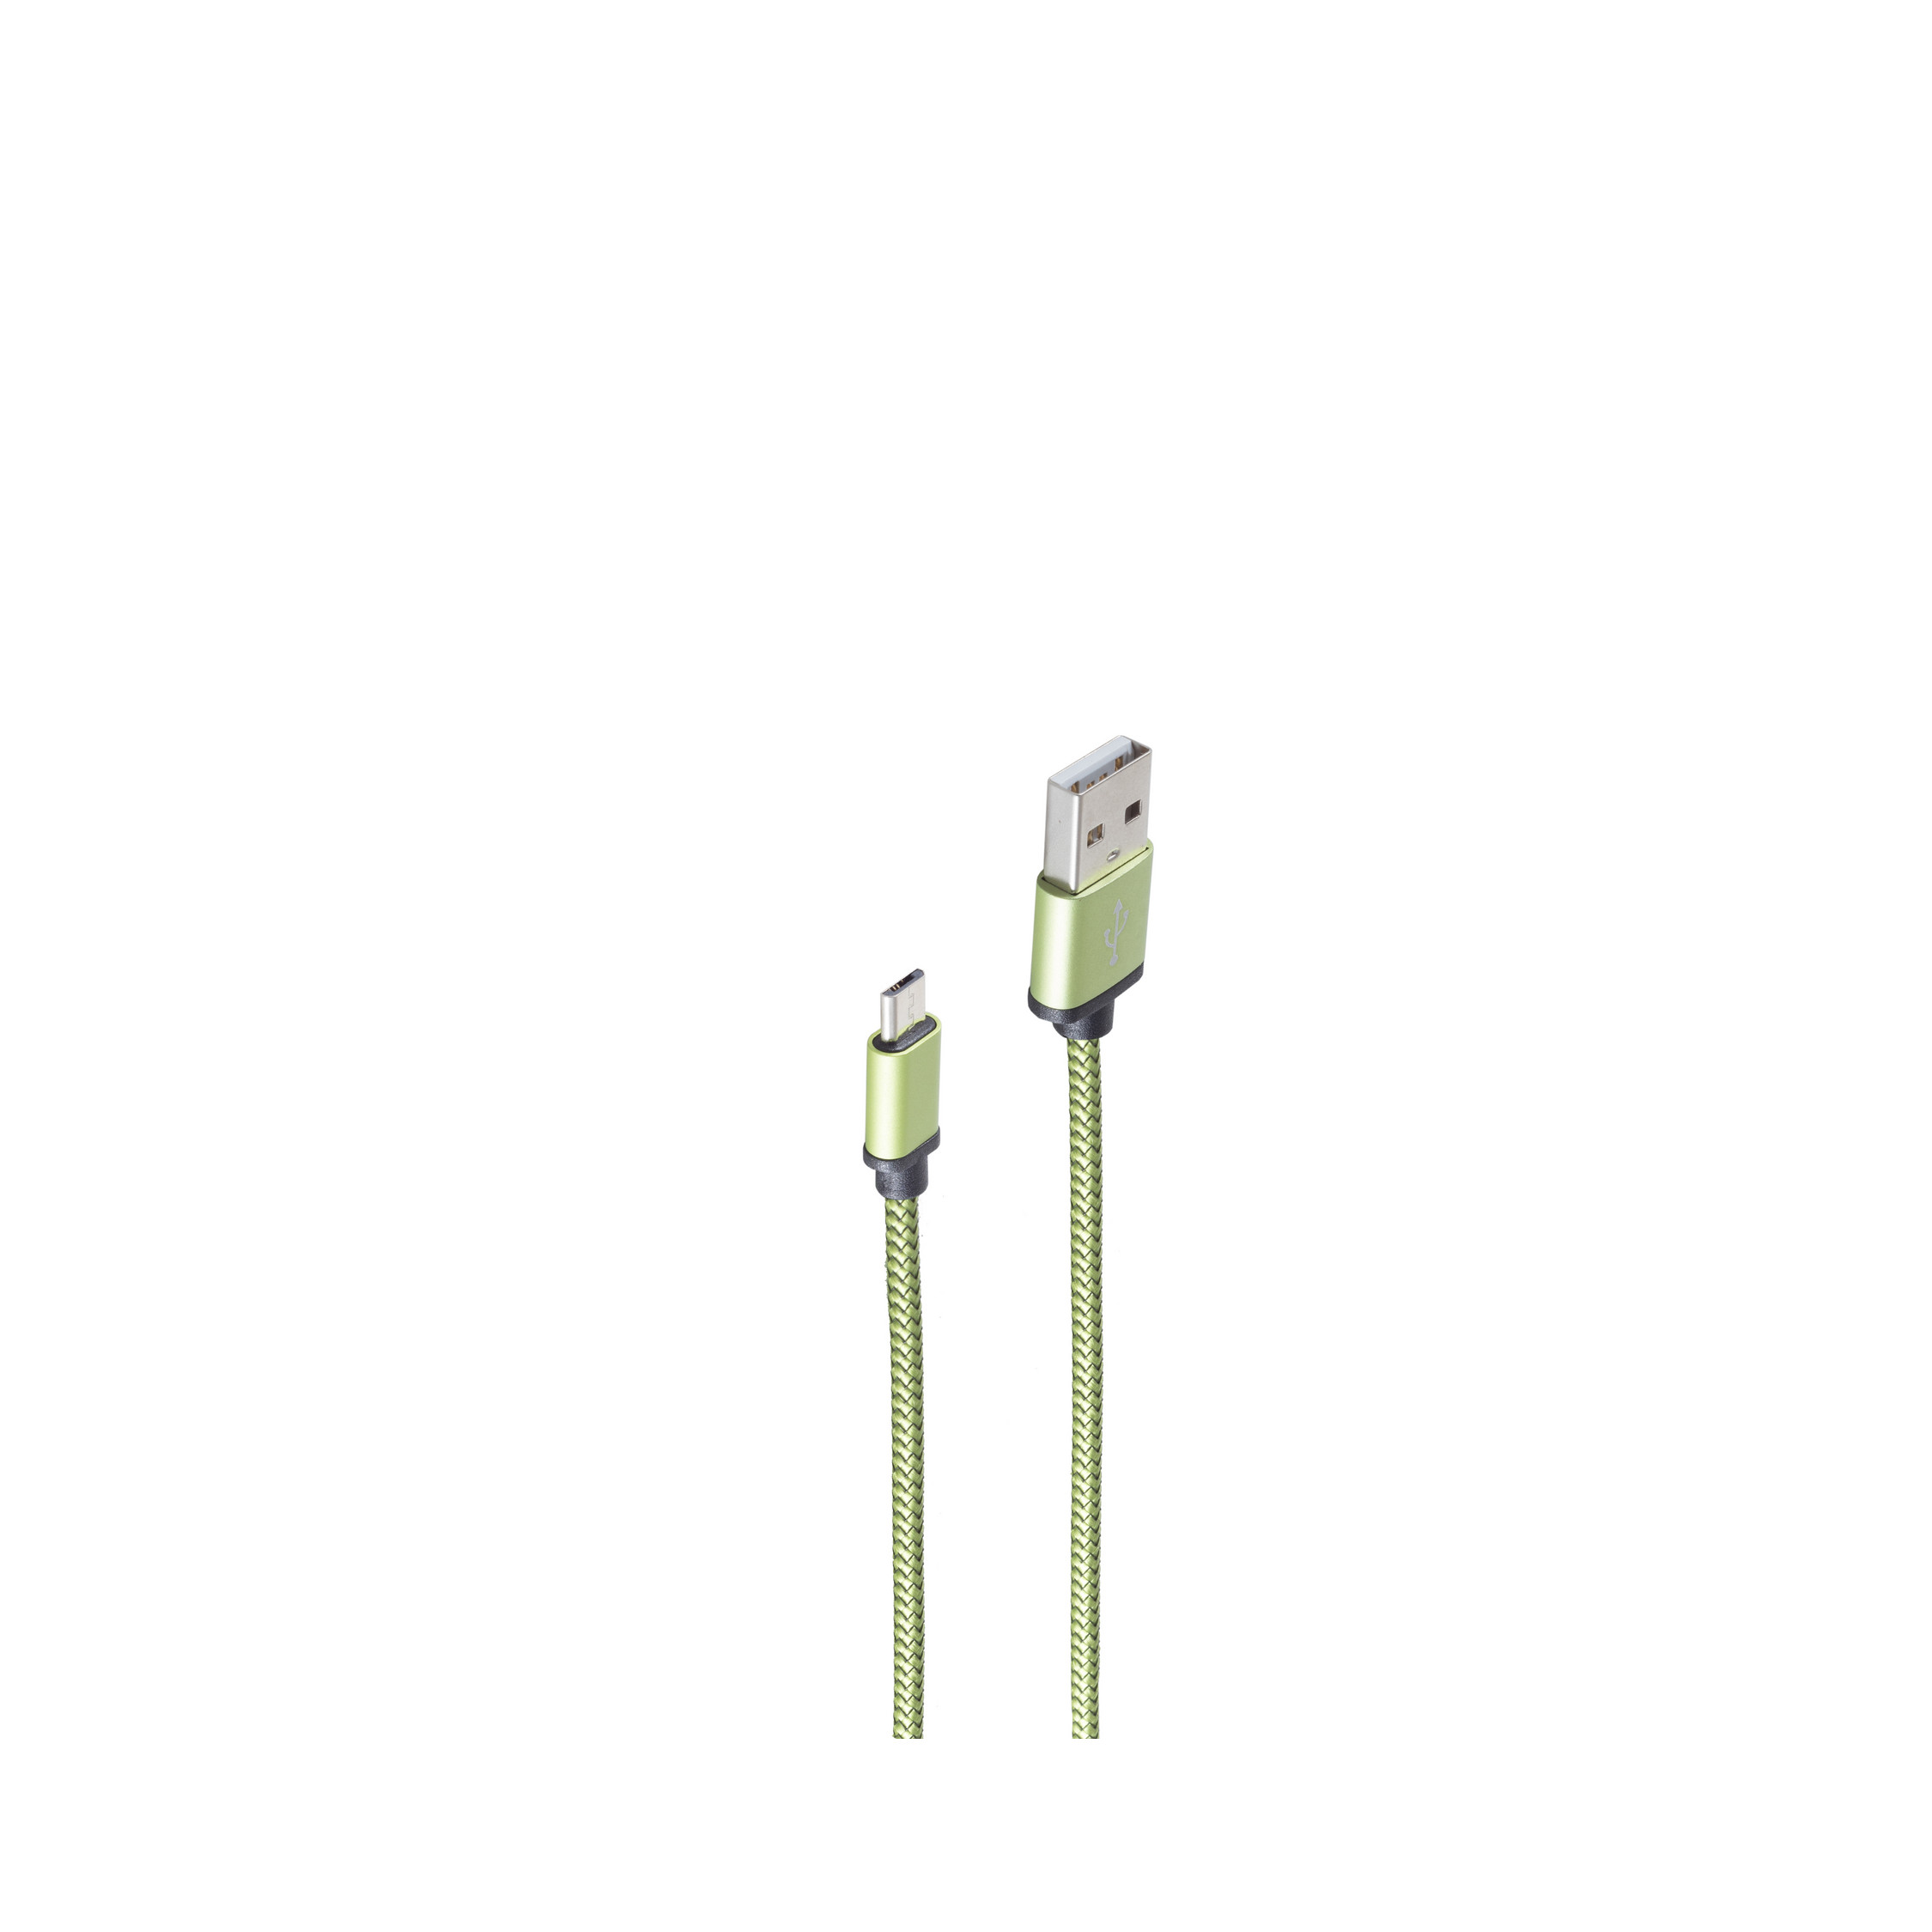 SHIVERPEAKS USB-Ladekabel A B m, USB USB Micro auf aqua 0,9 Stecker grün, 0,9m, Ladekabel